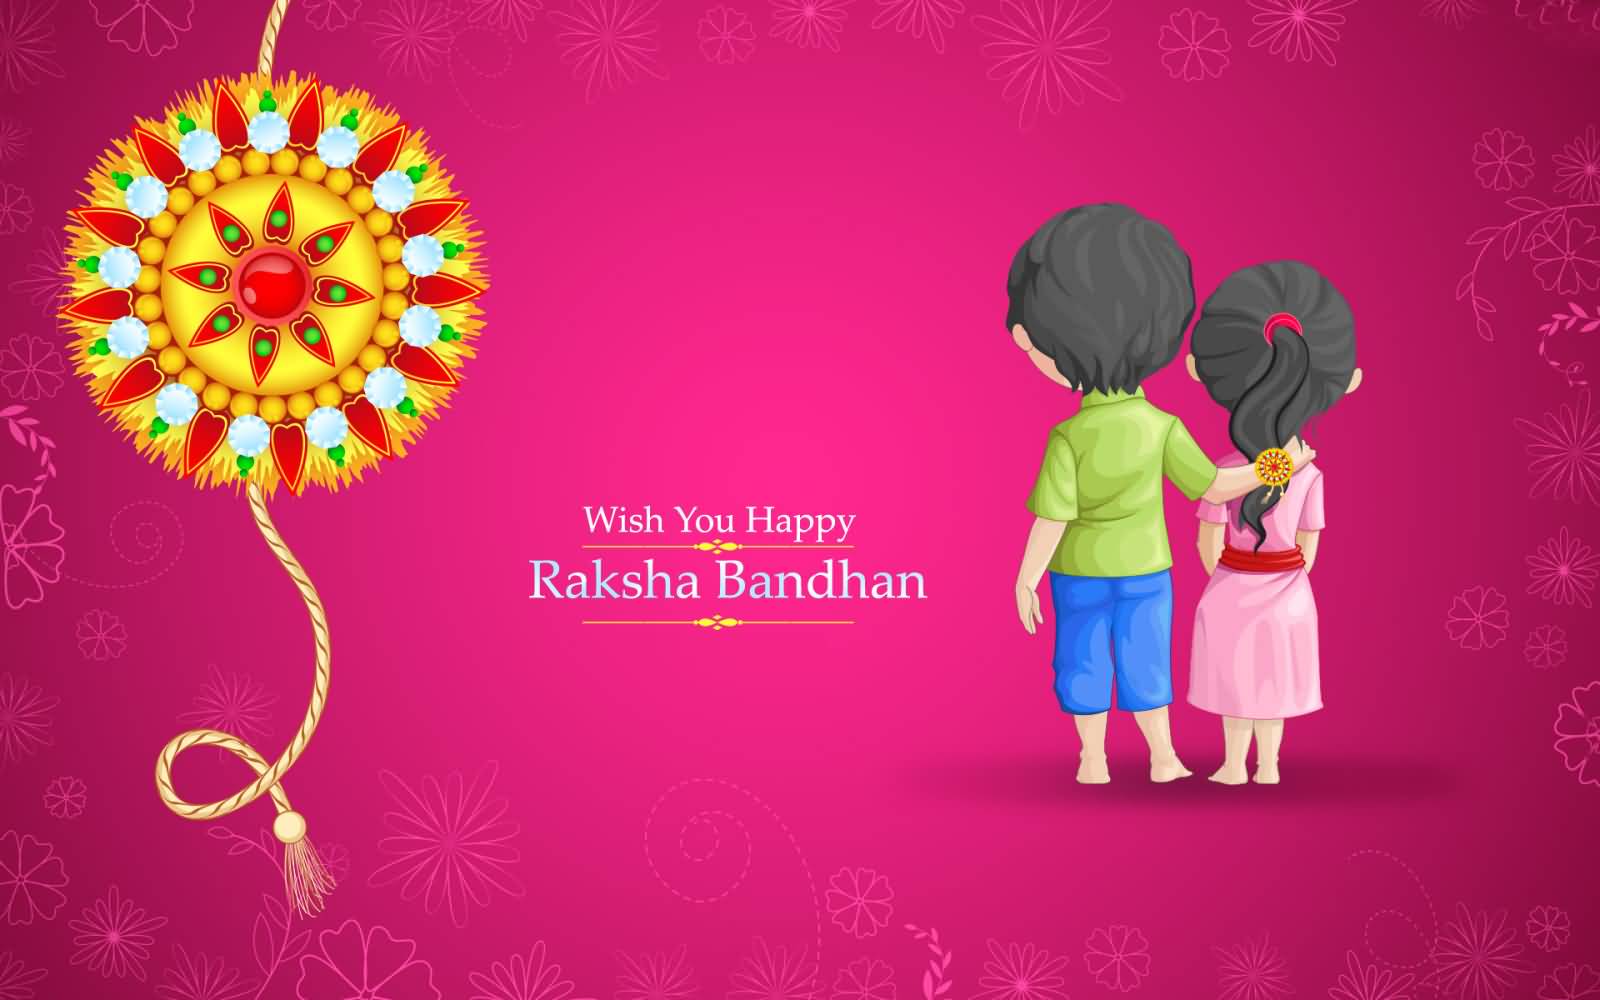 Wish You Happy Raksha Bandhan Wallpaper Image